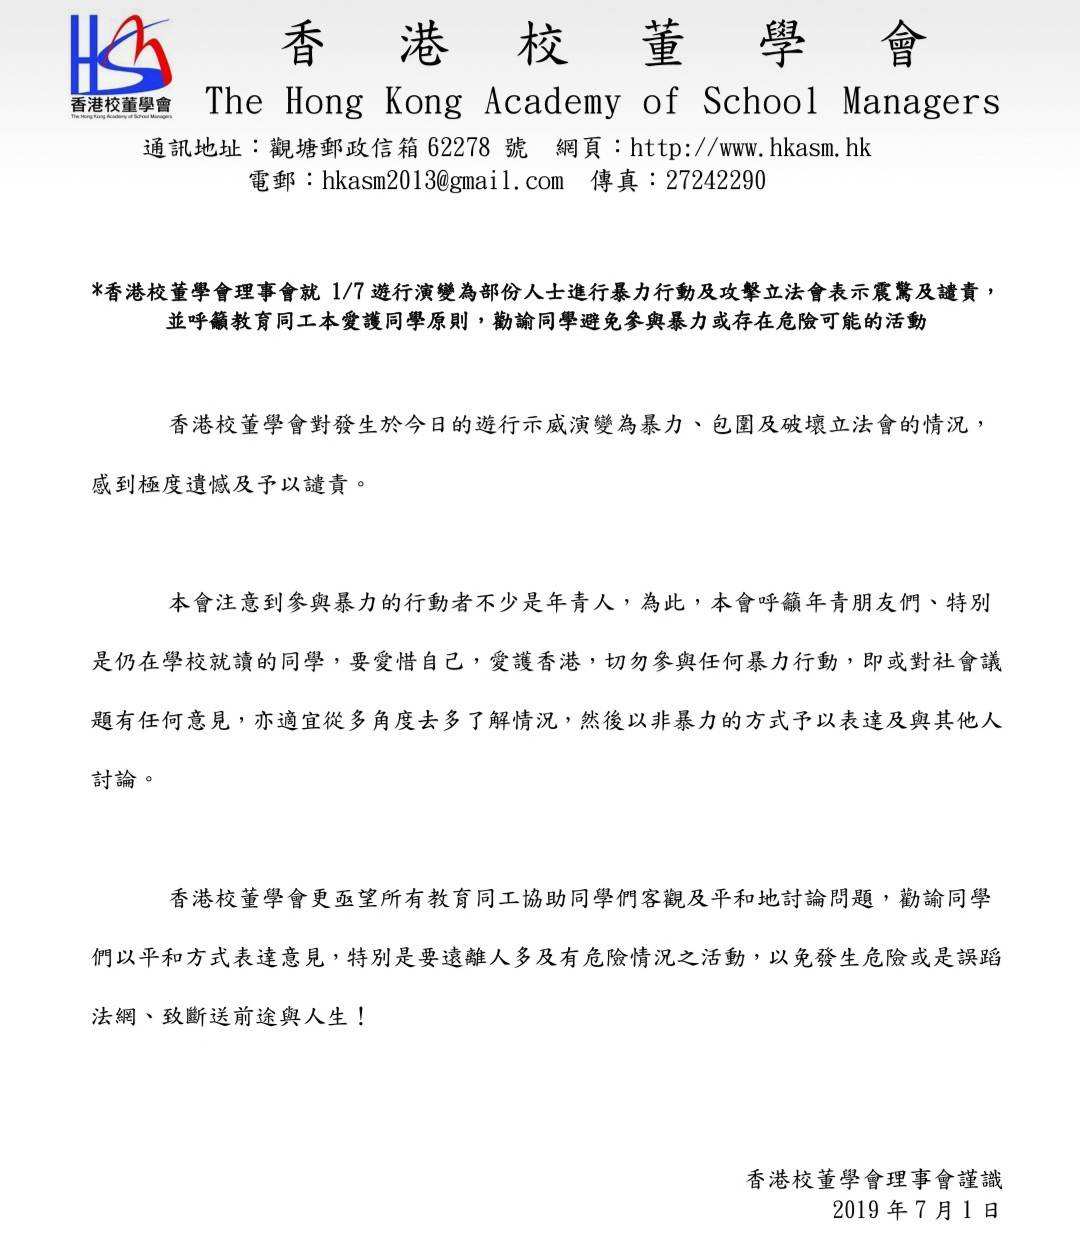 香港校董學會理事會發布聲明譴責暴力行動